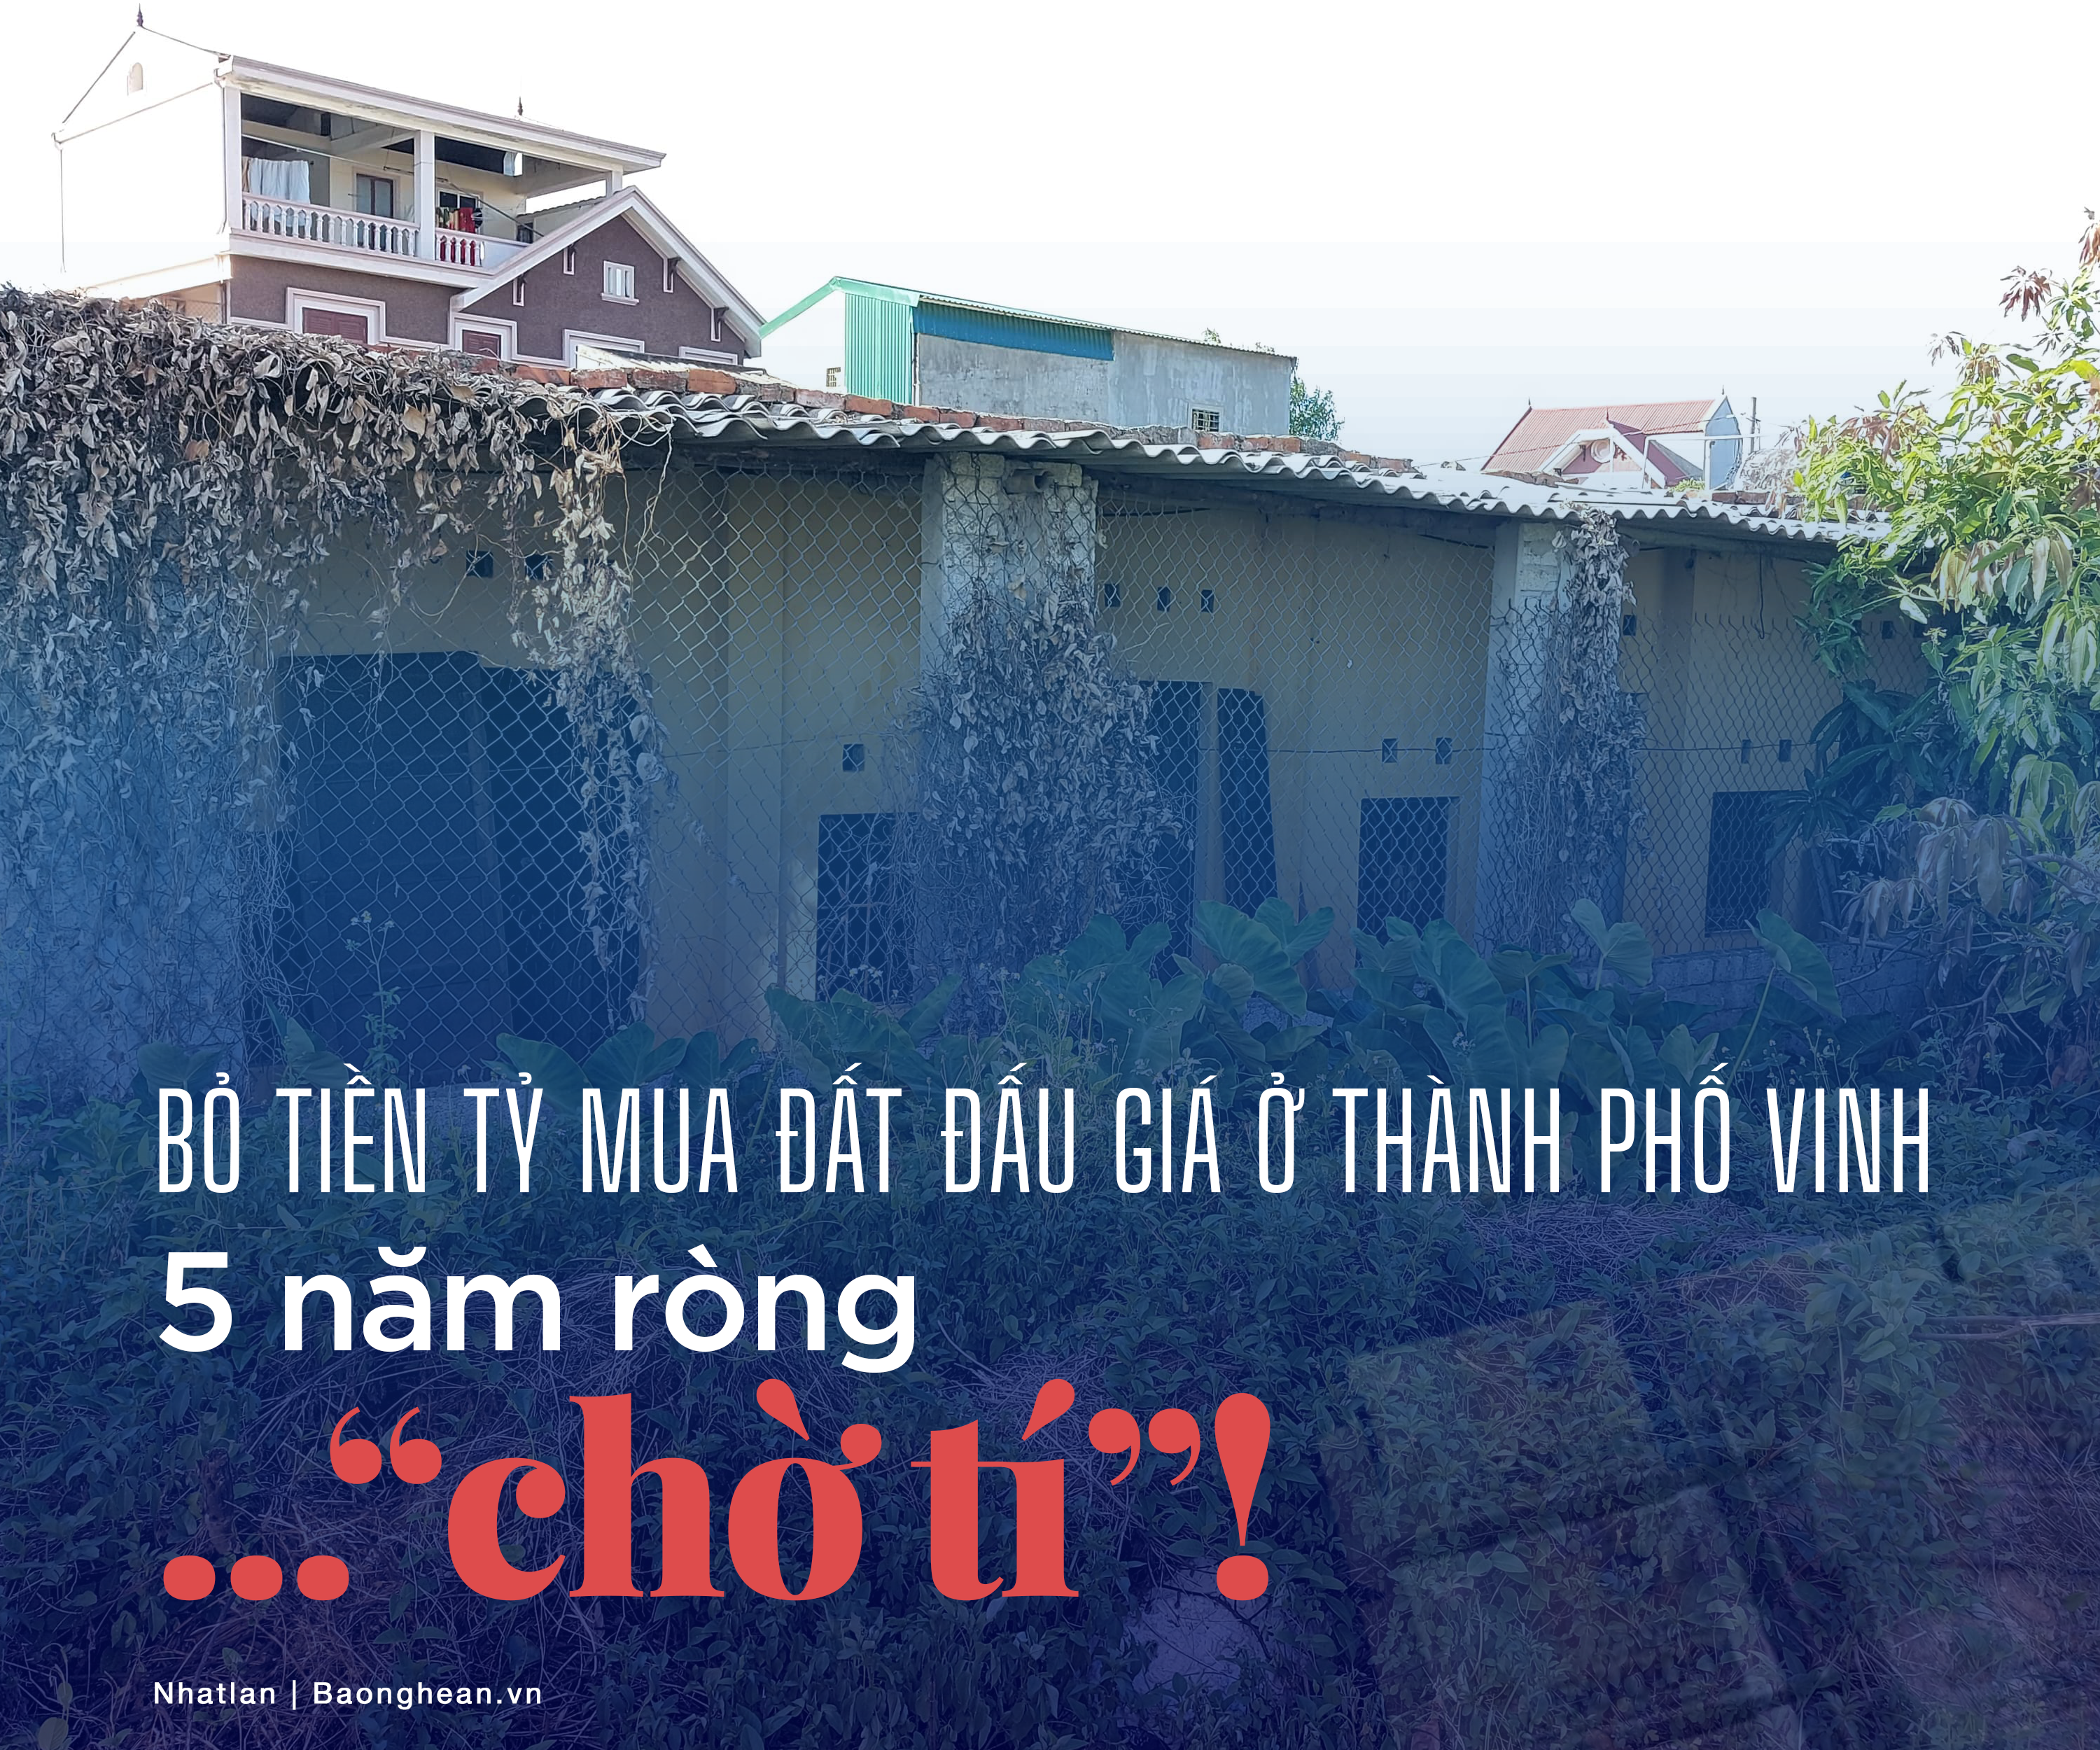 Bài viết “Bỏ tiền tỷ mua đất đấu giá ở thành phố Vinh: 5 năm ròng... “chờ tí”!” đăng tải trên Báo Nghệ An.